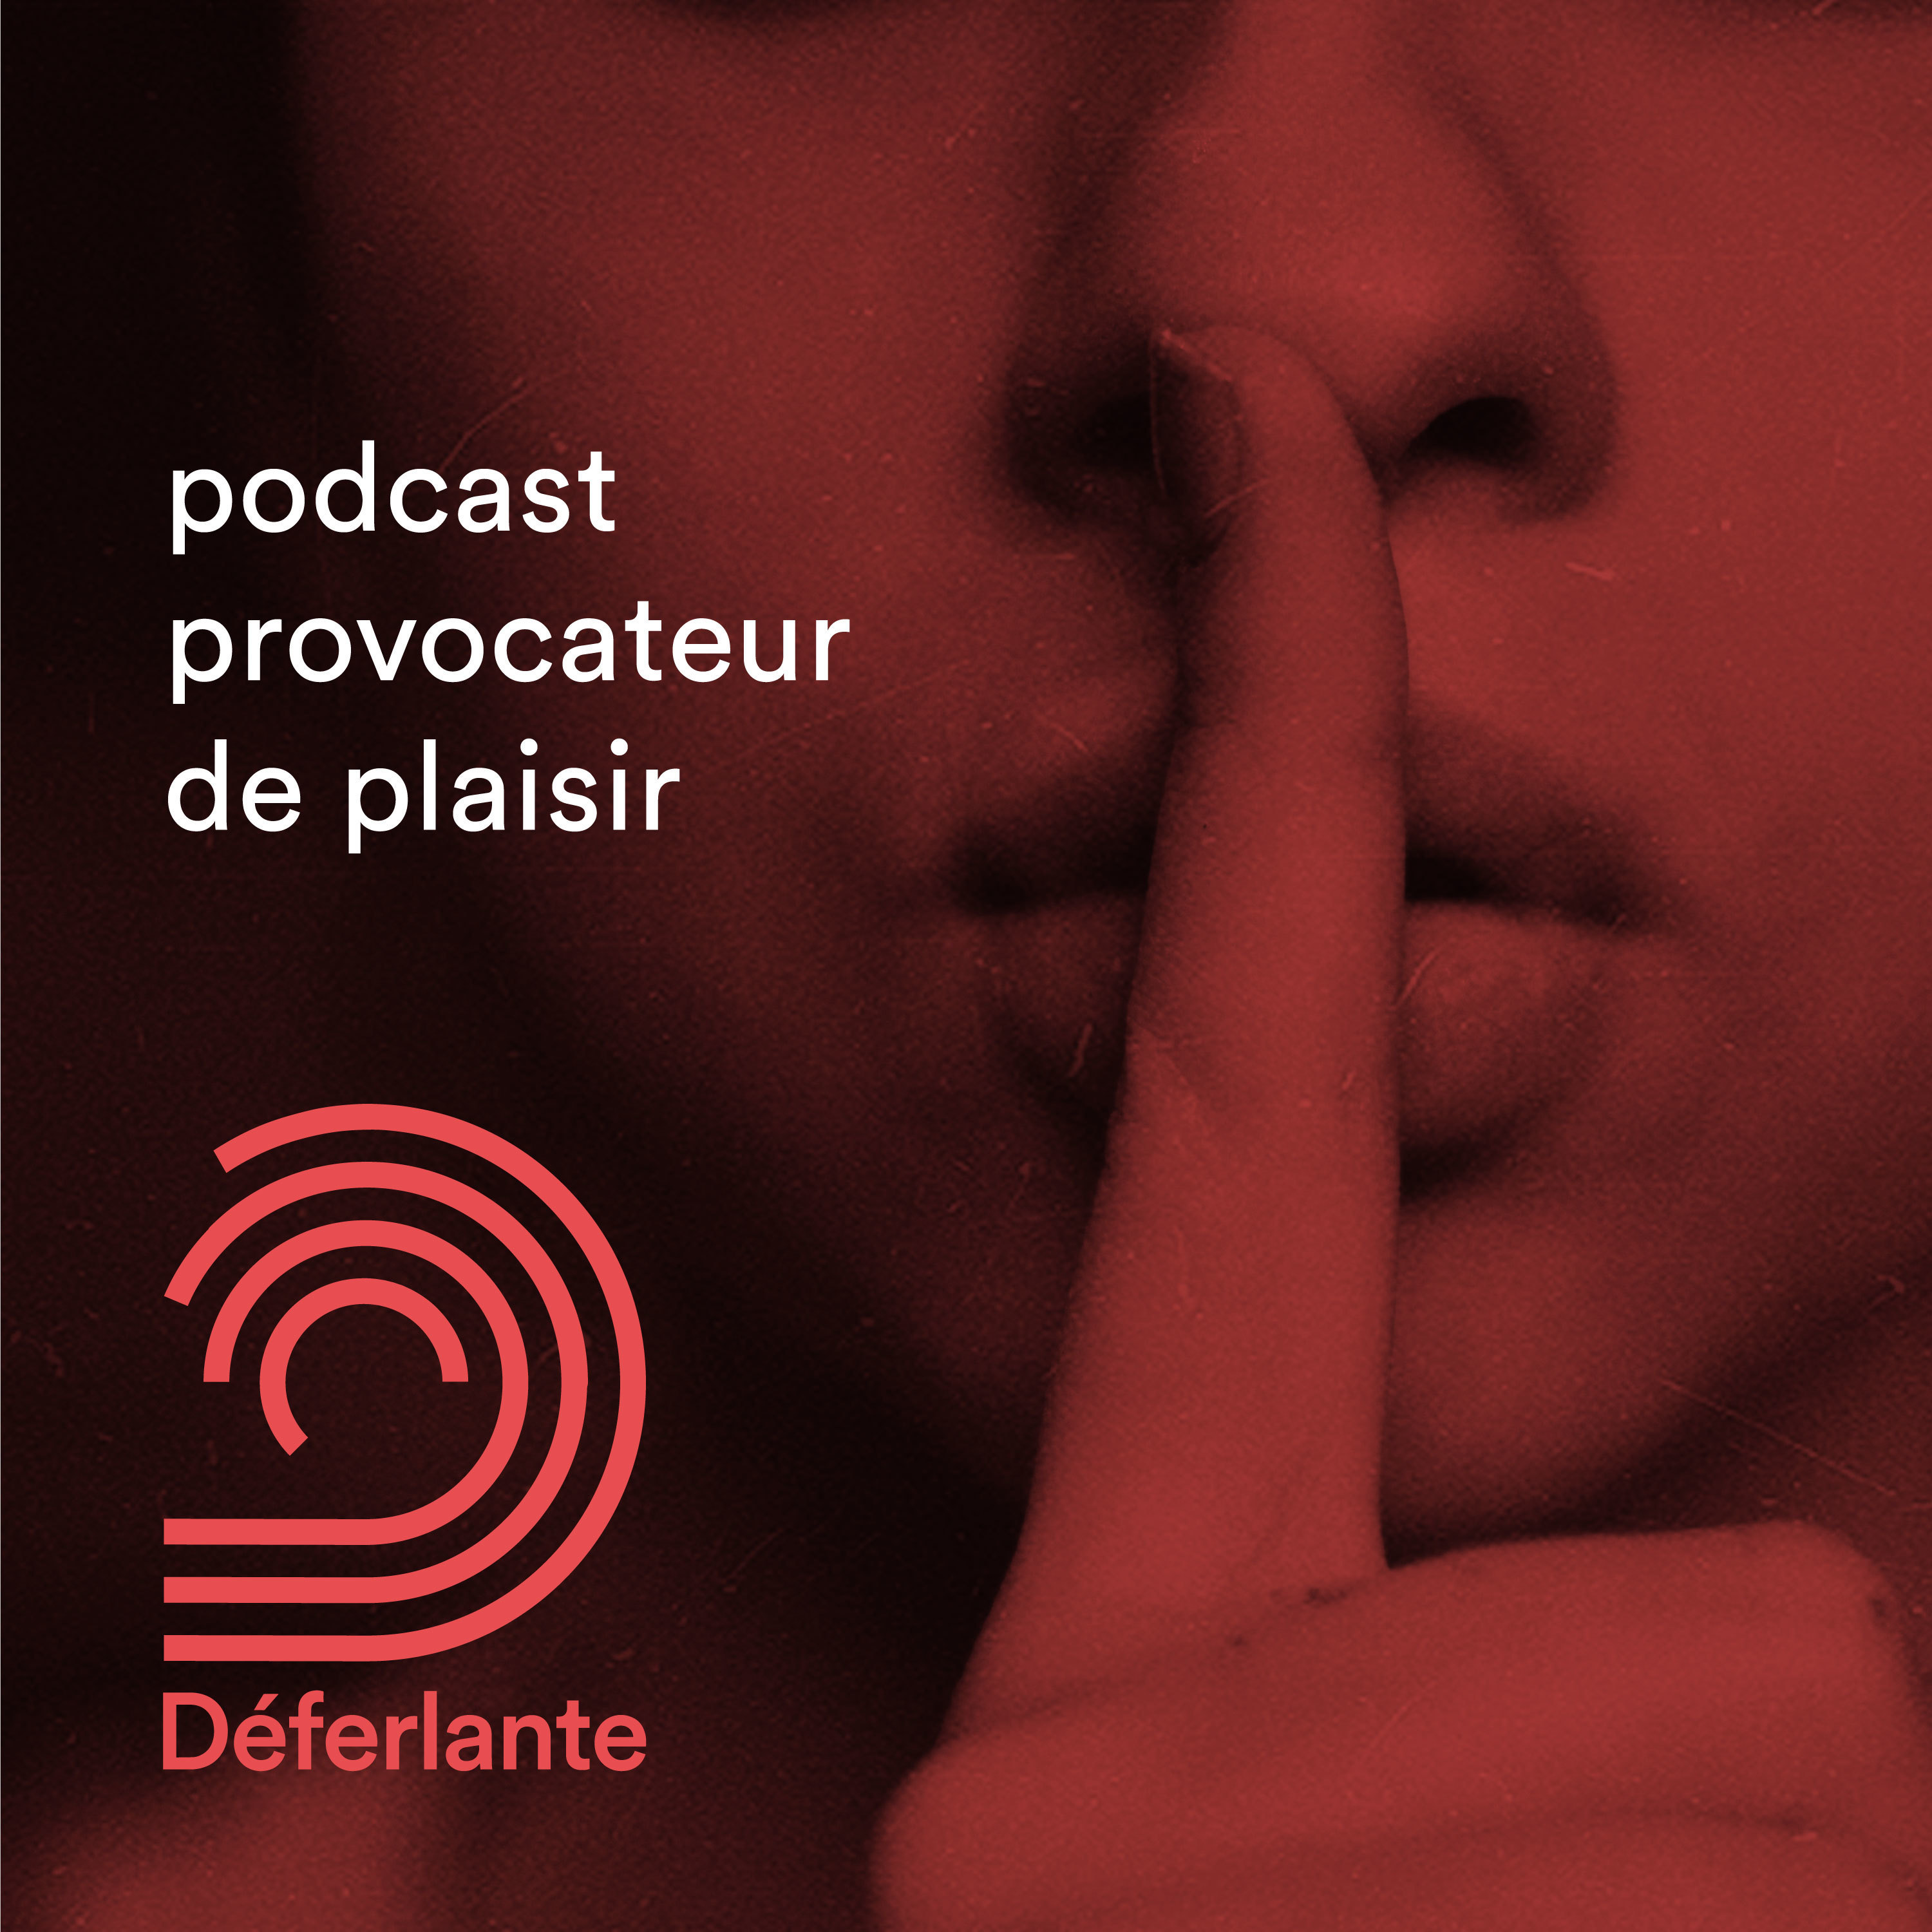 Déferlante – podcast provocateur de plaisir